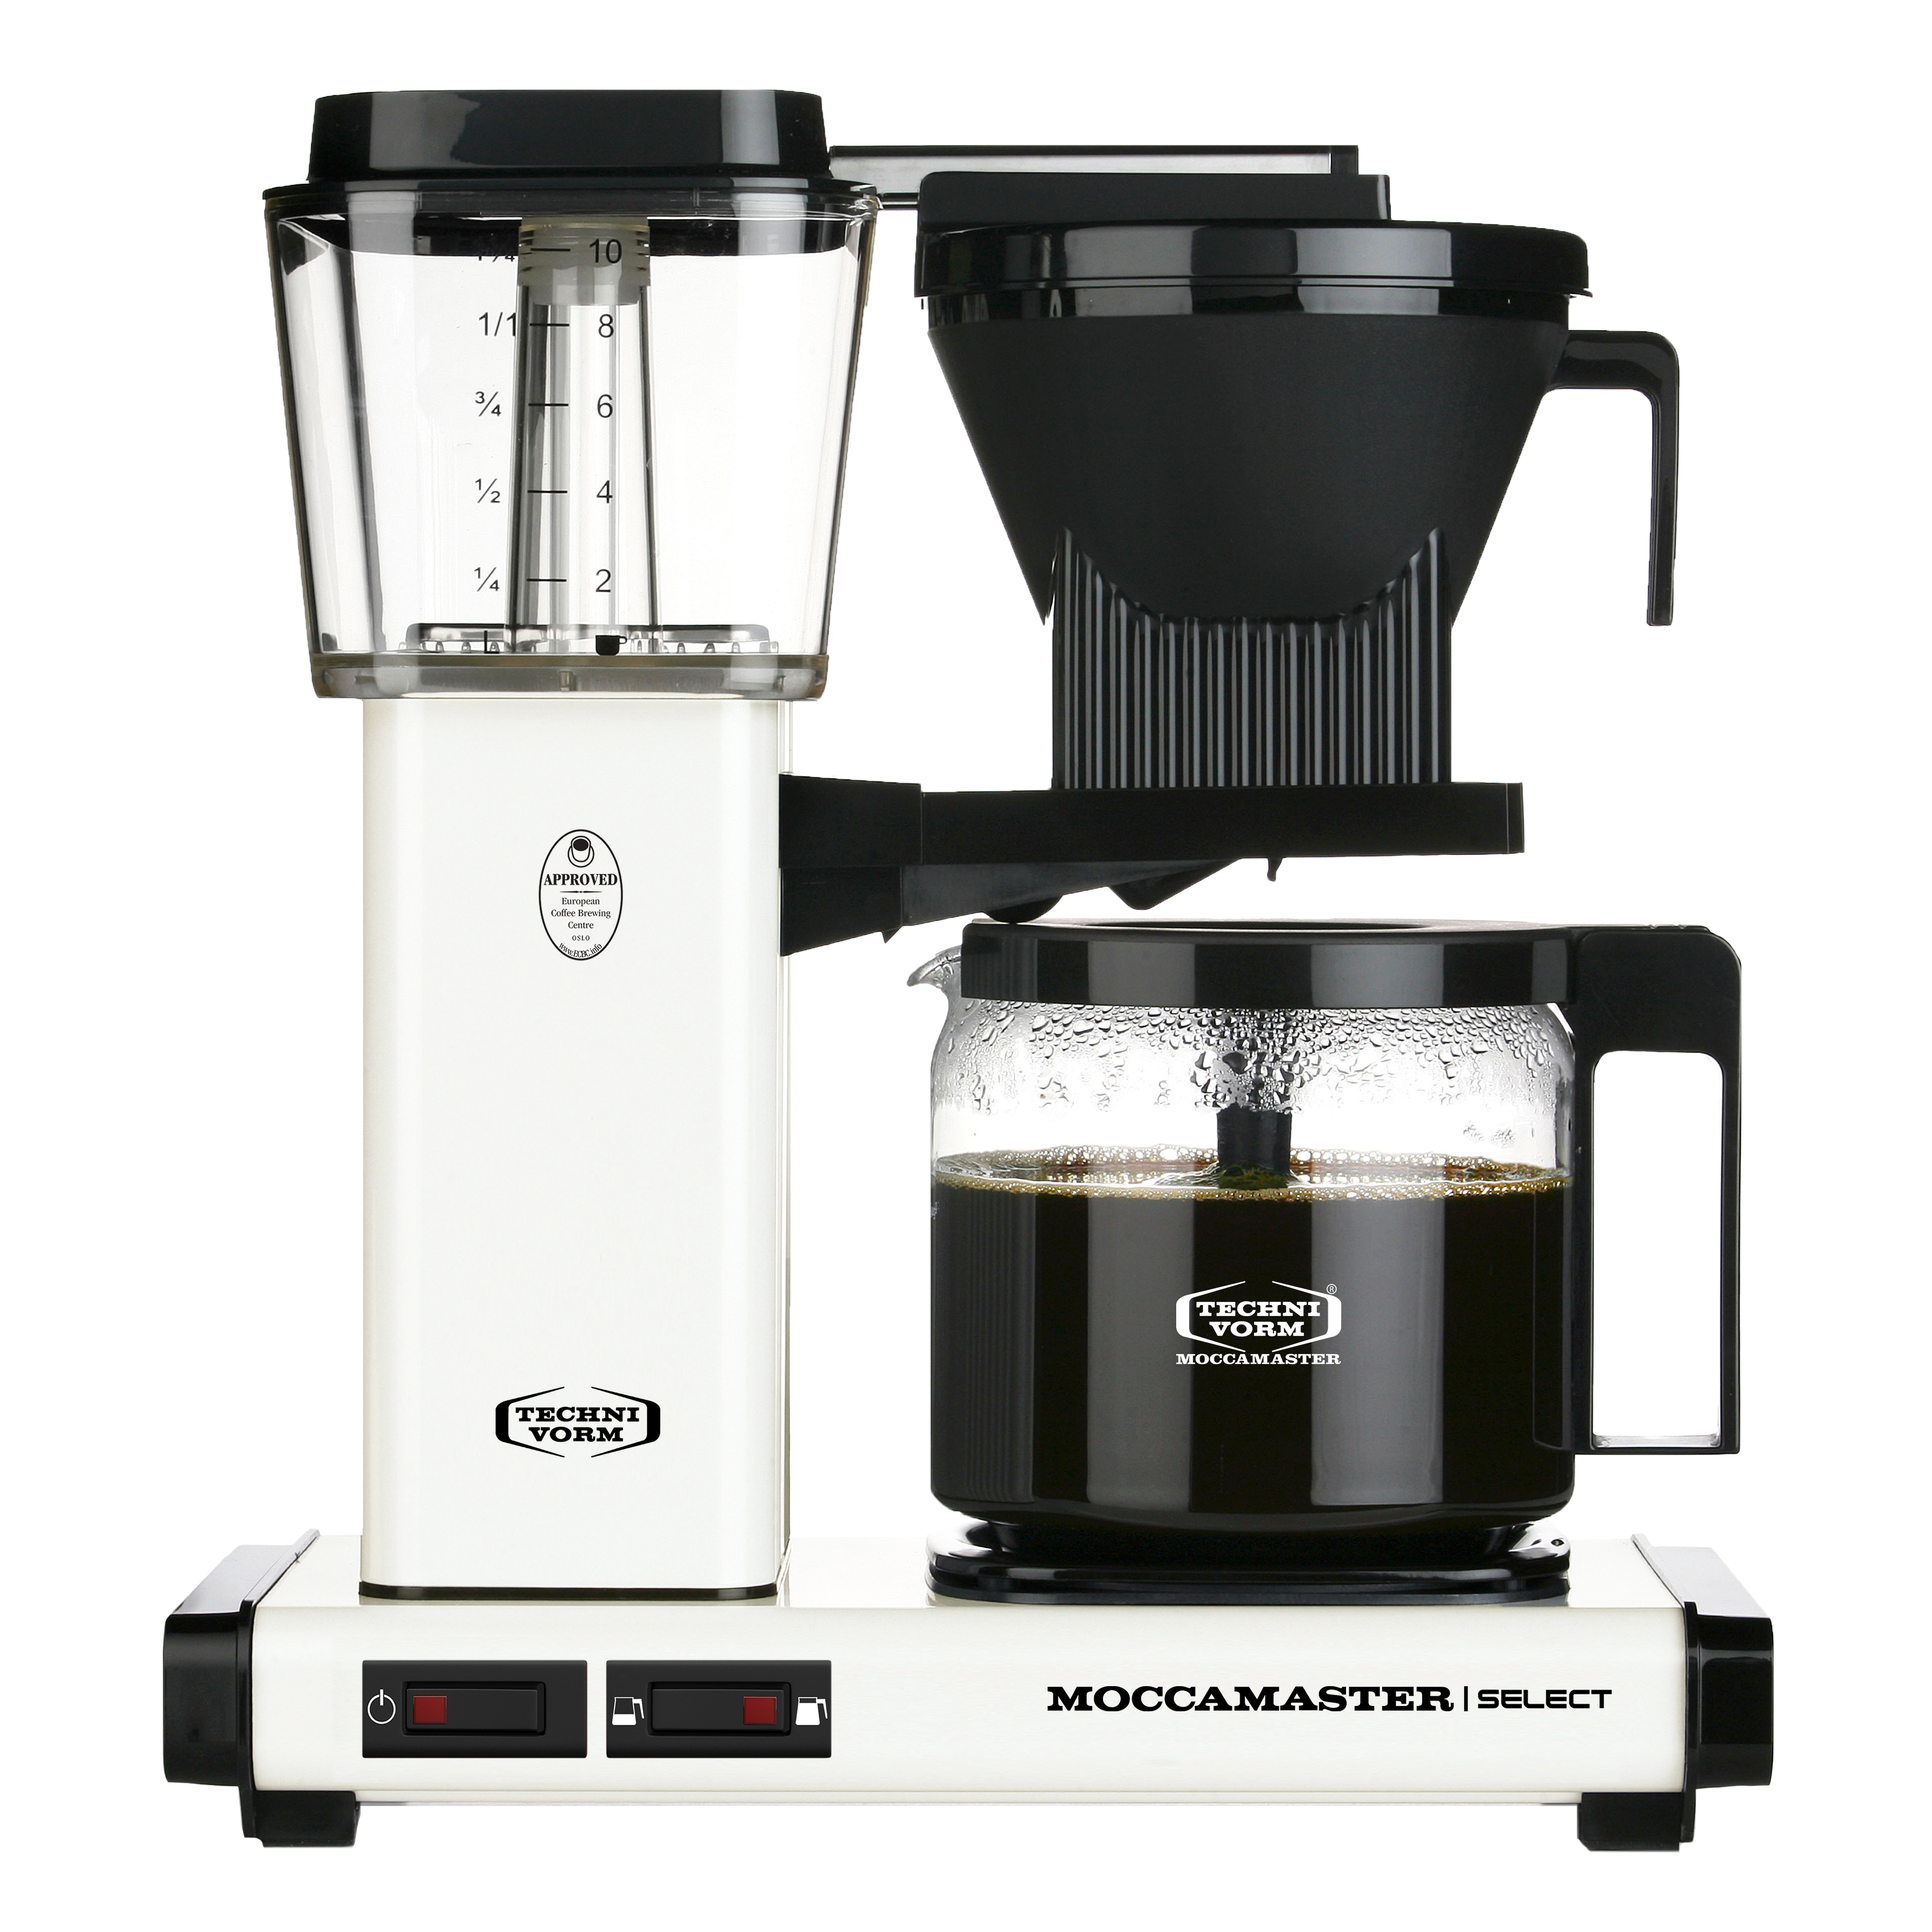 Machine à café filtre avec broyeur : Devis sur Techni-Contact